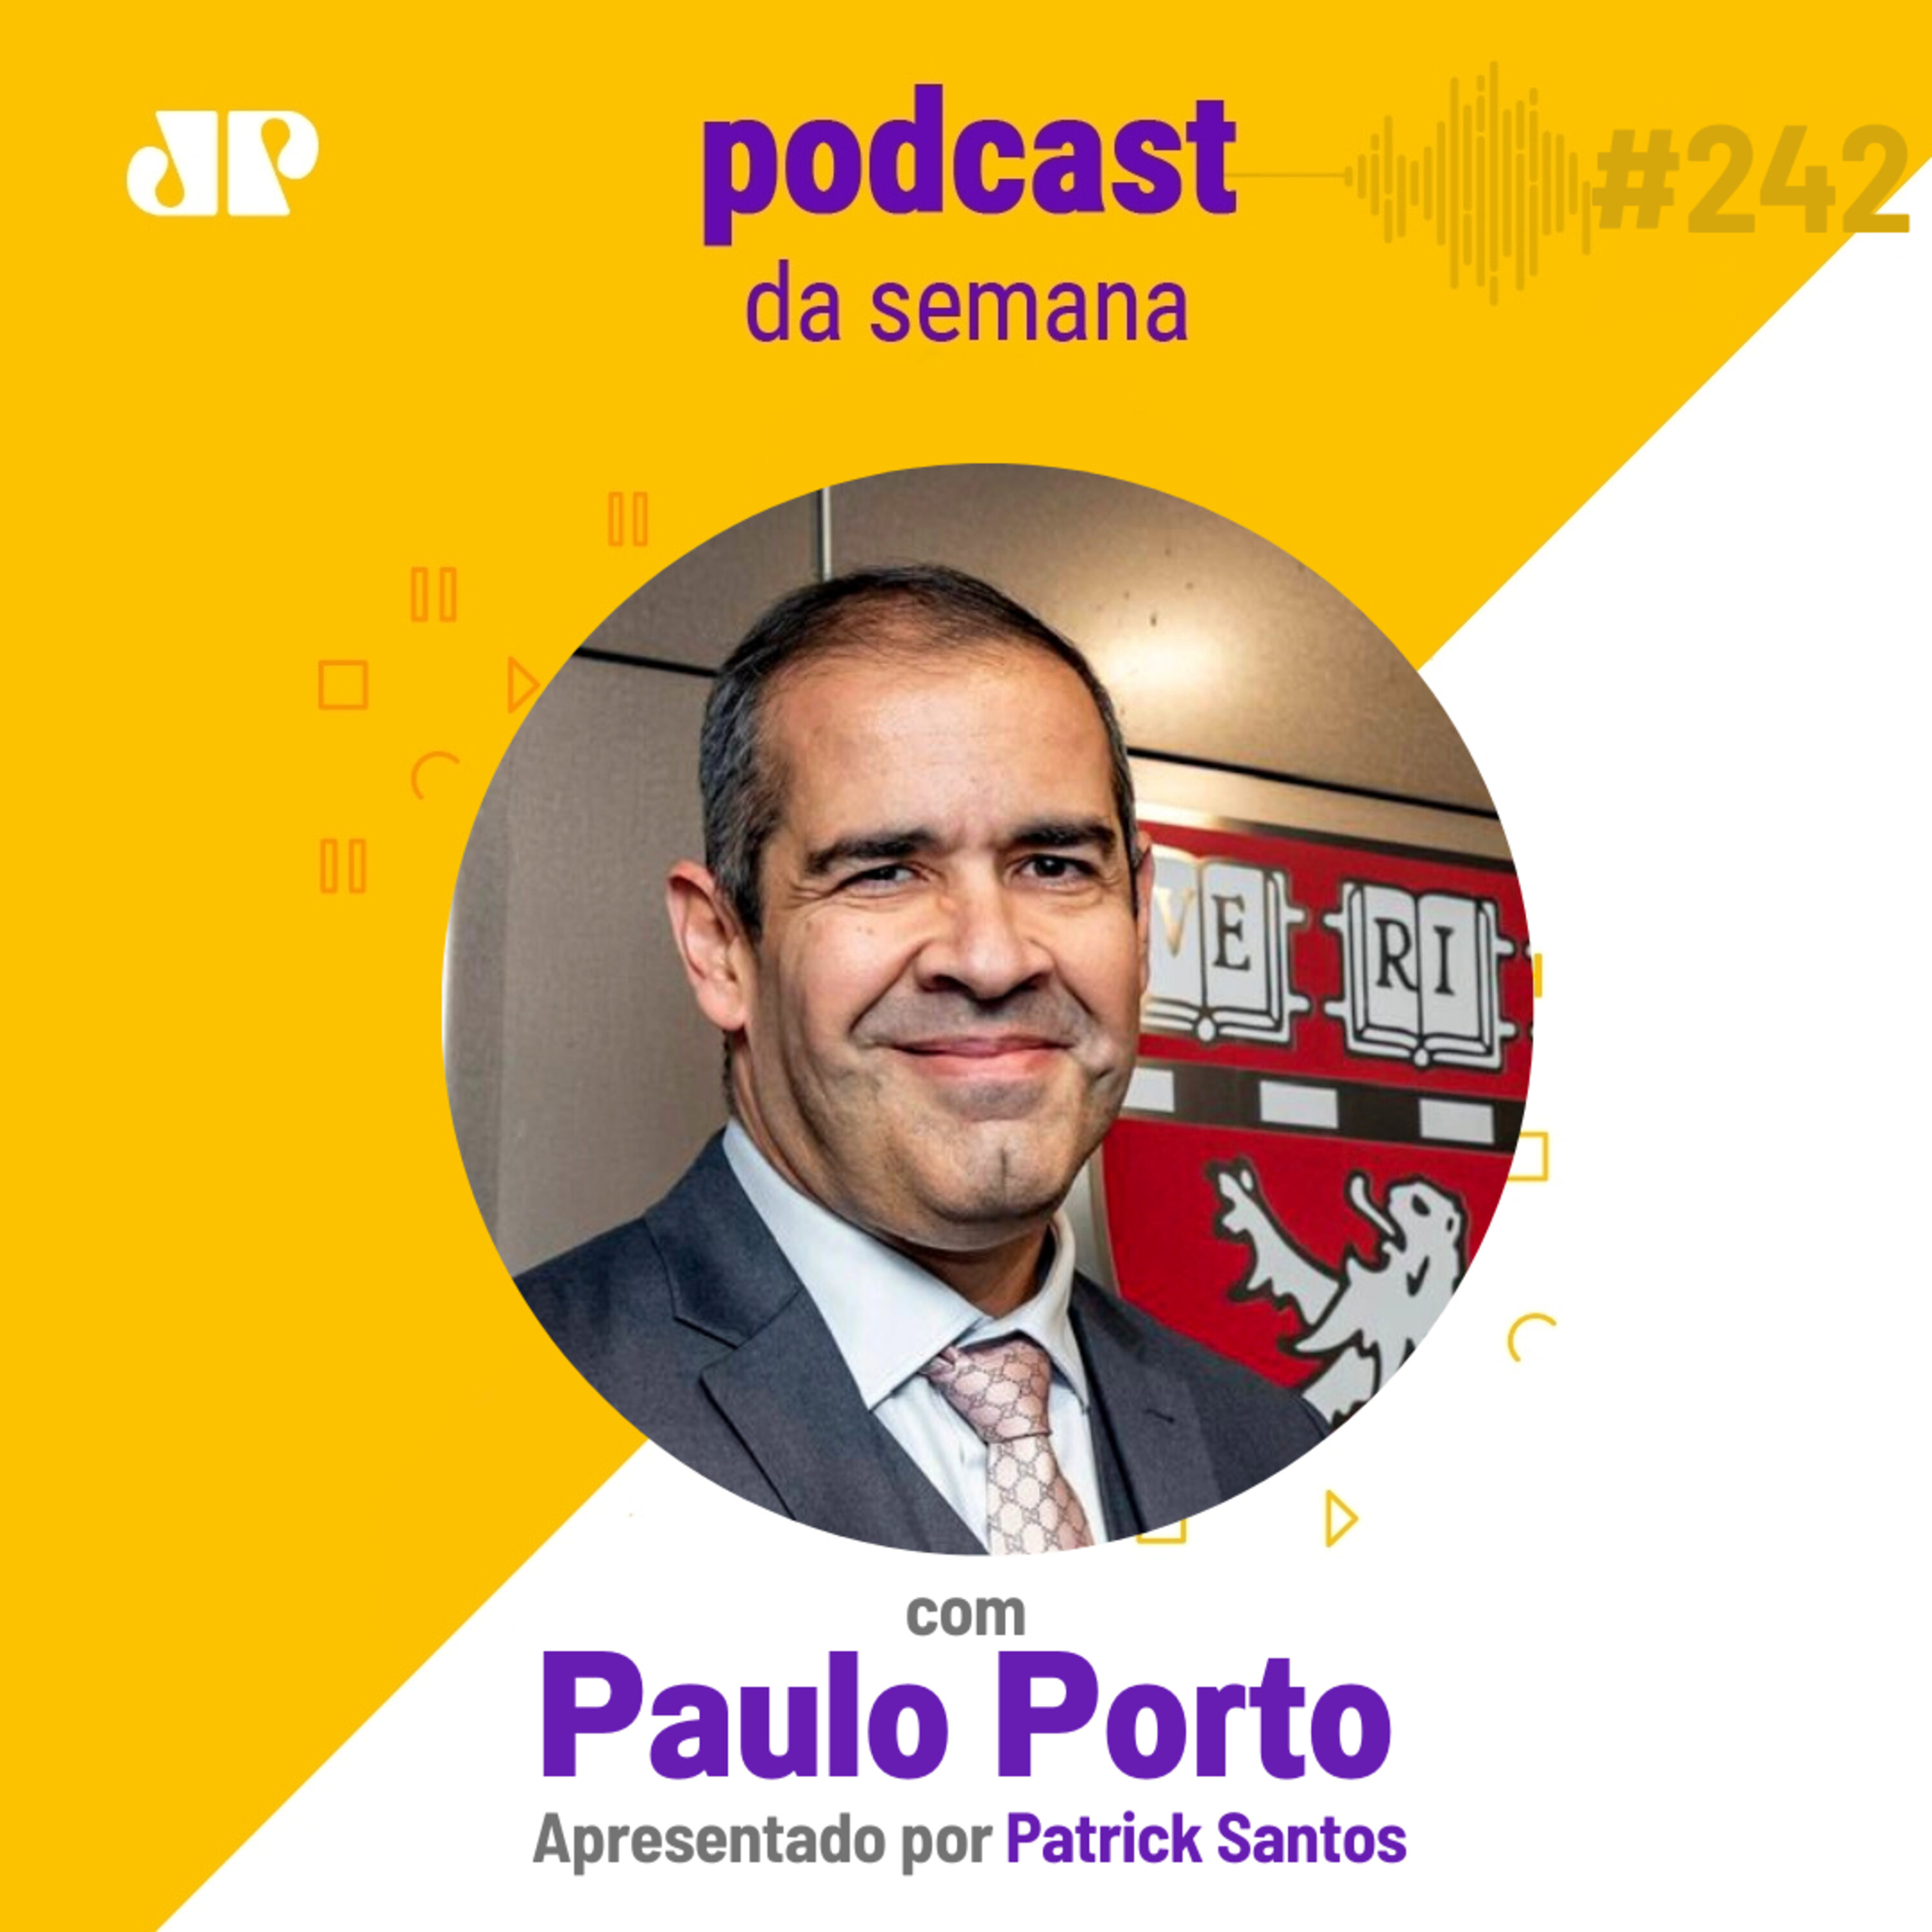 Paulo Porto - "Não existe acaso"